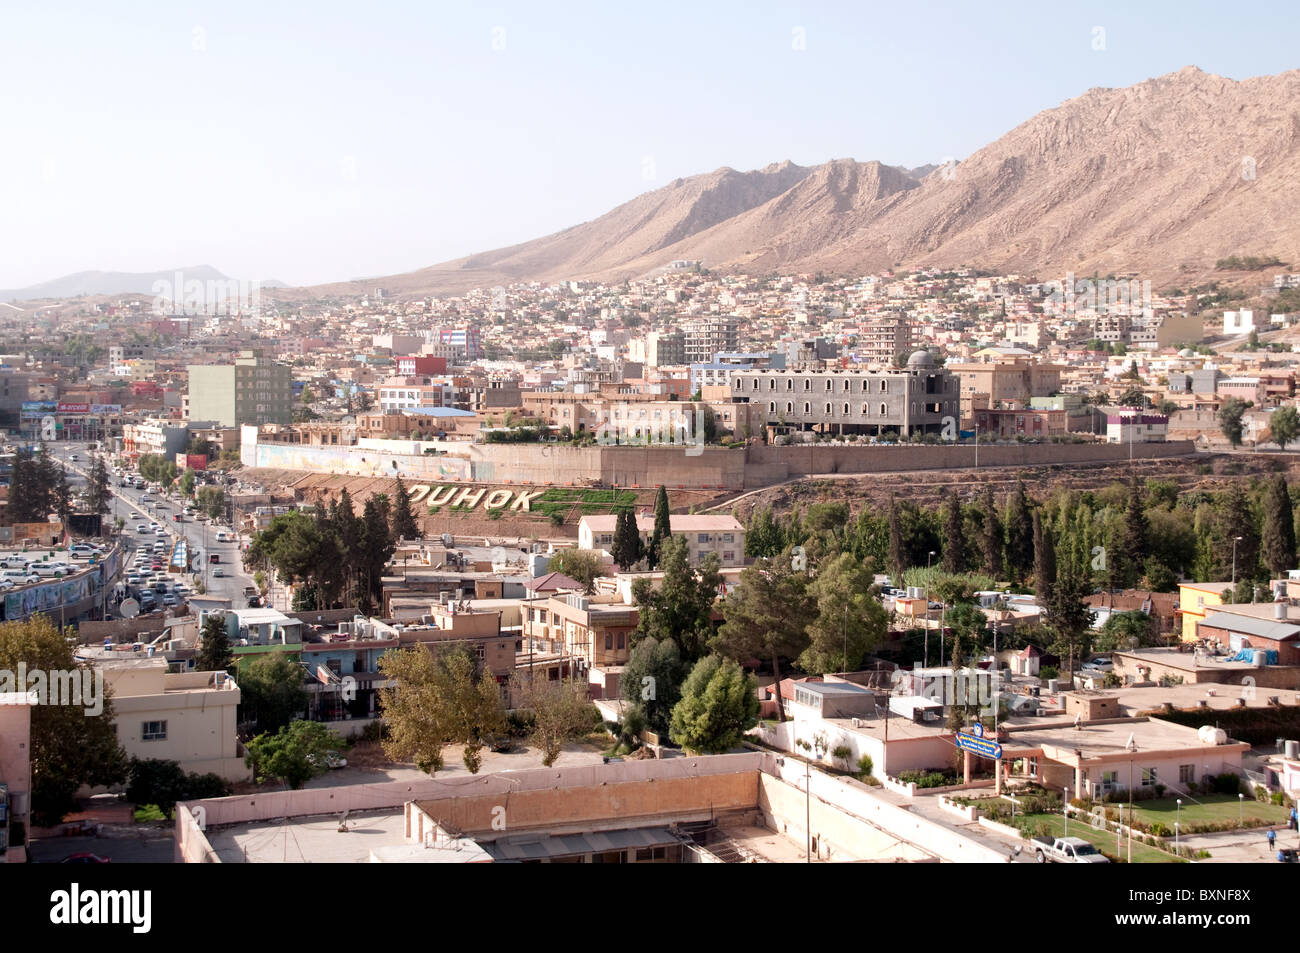 Una vista della città curda di Duhok nella regione del Kurdistan del nord Iraq. Foto Stock